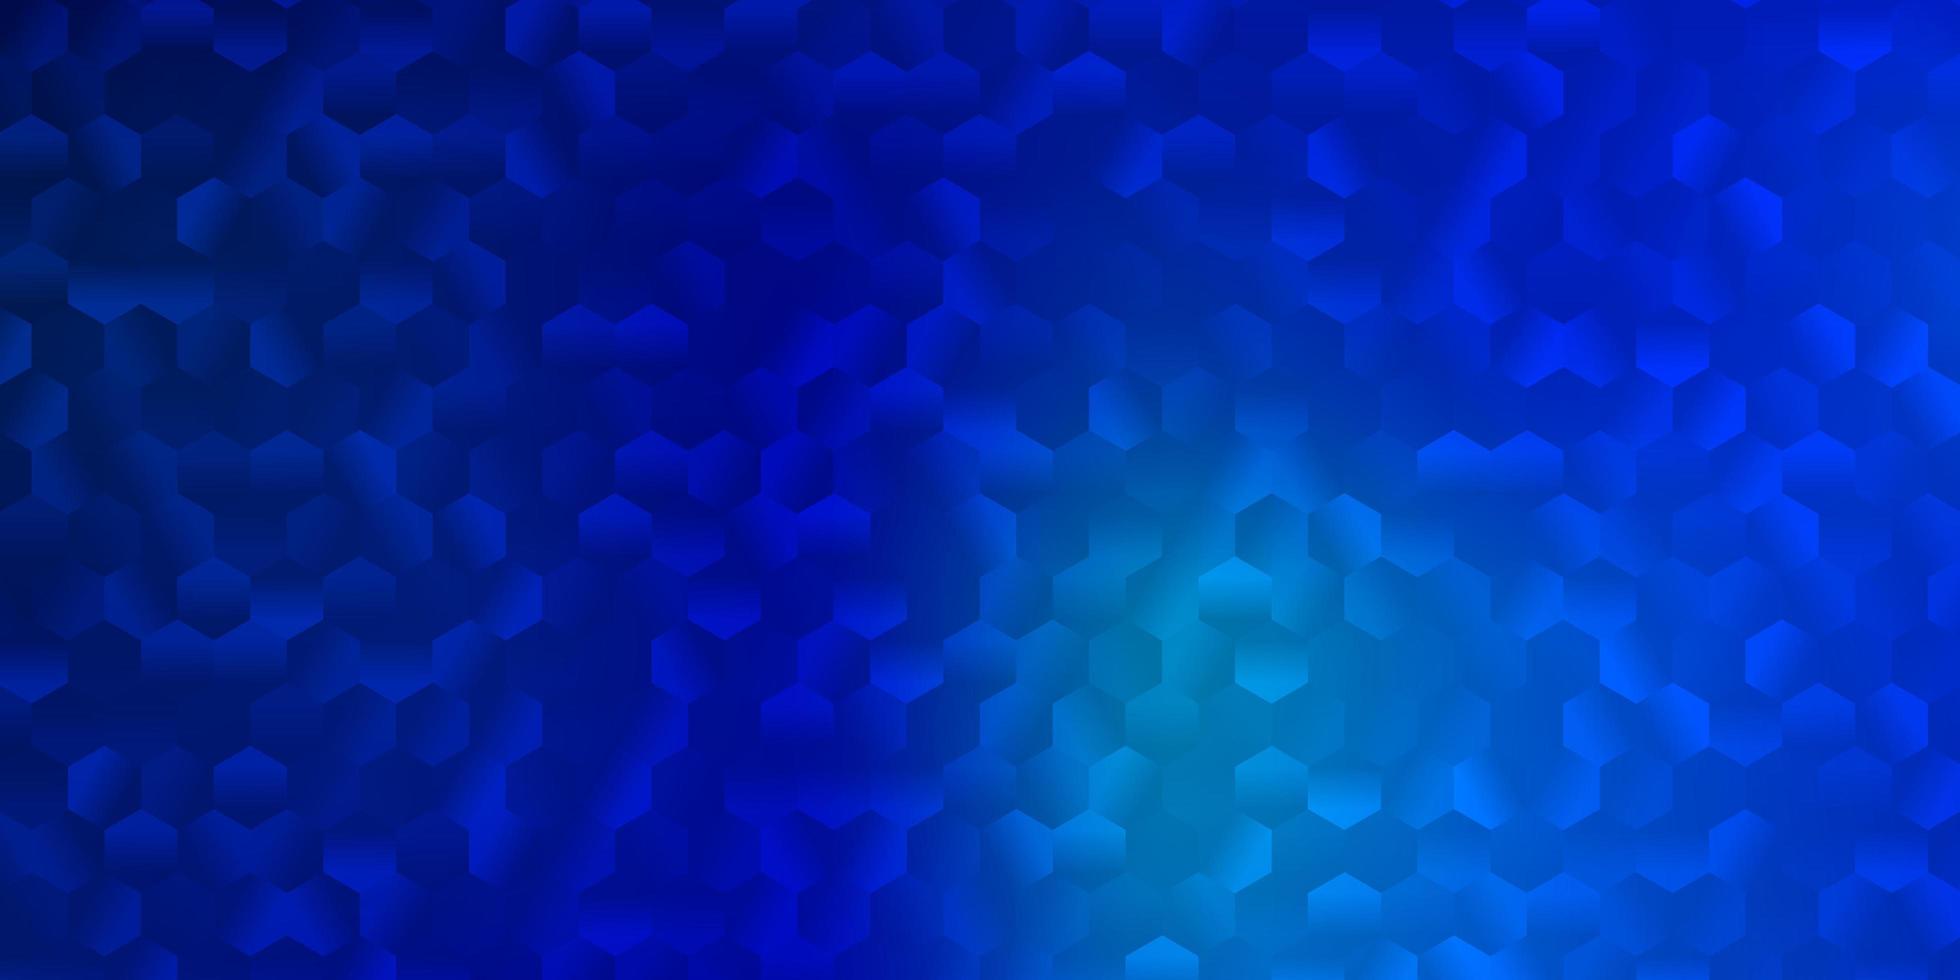 modèle vectoriel bleu clair dans un style hexagonal.